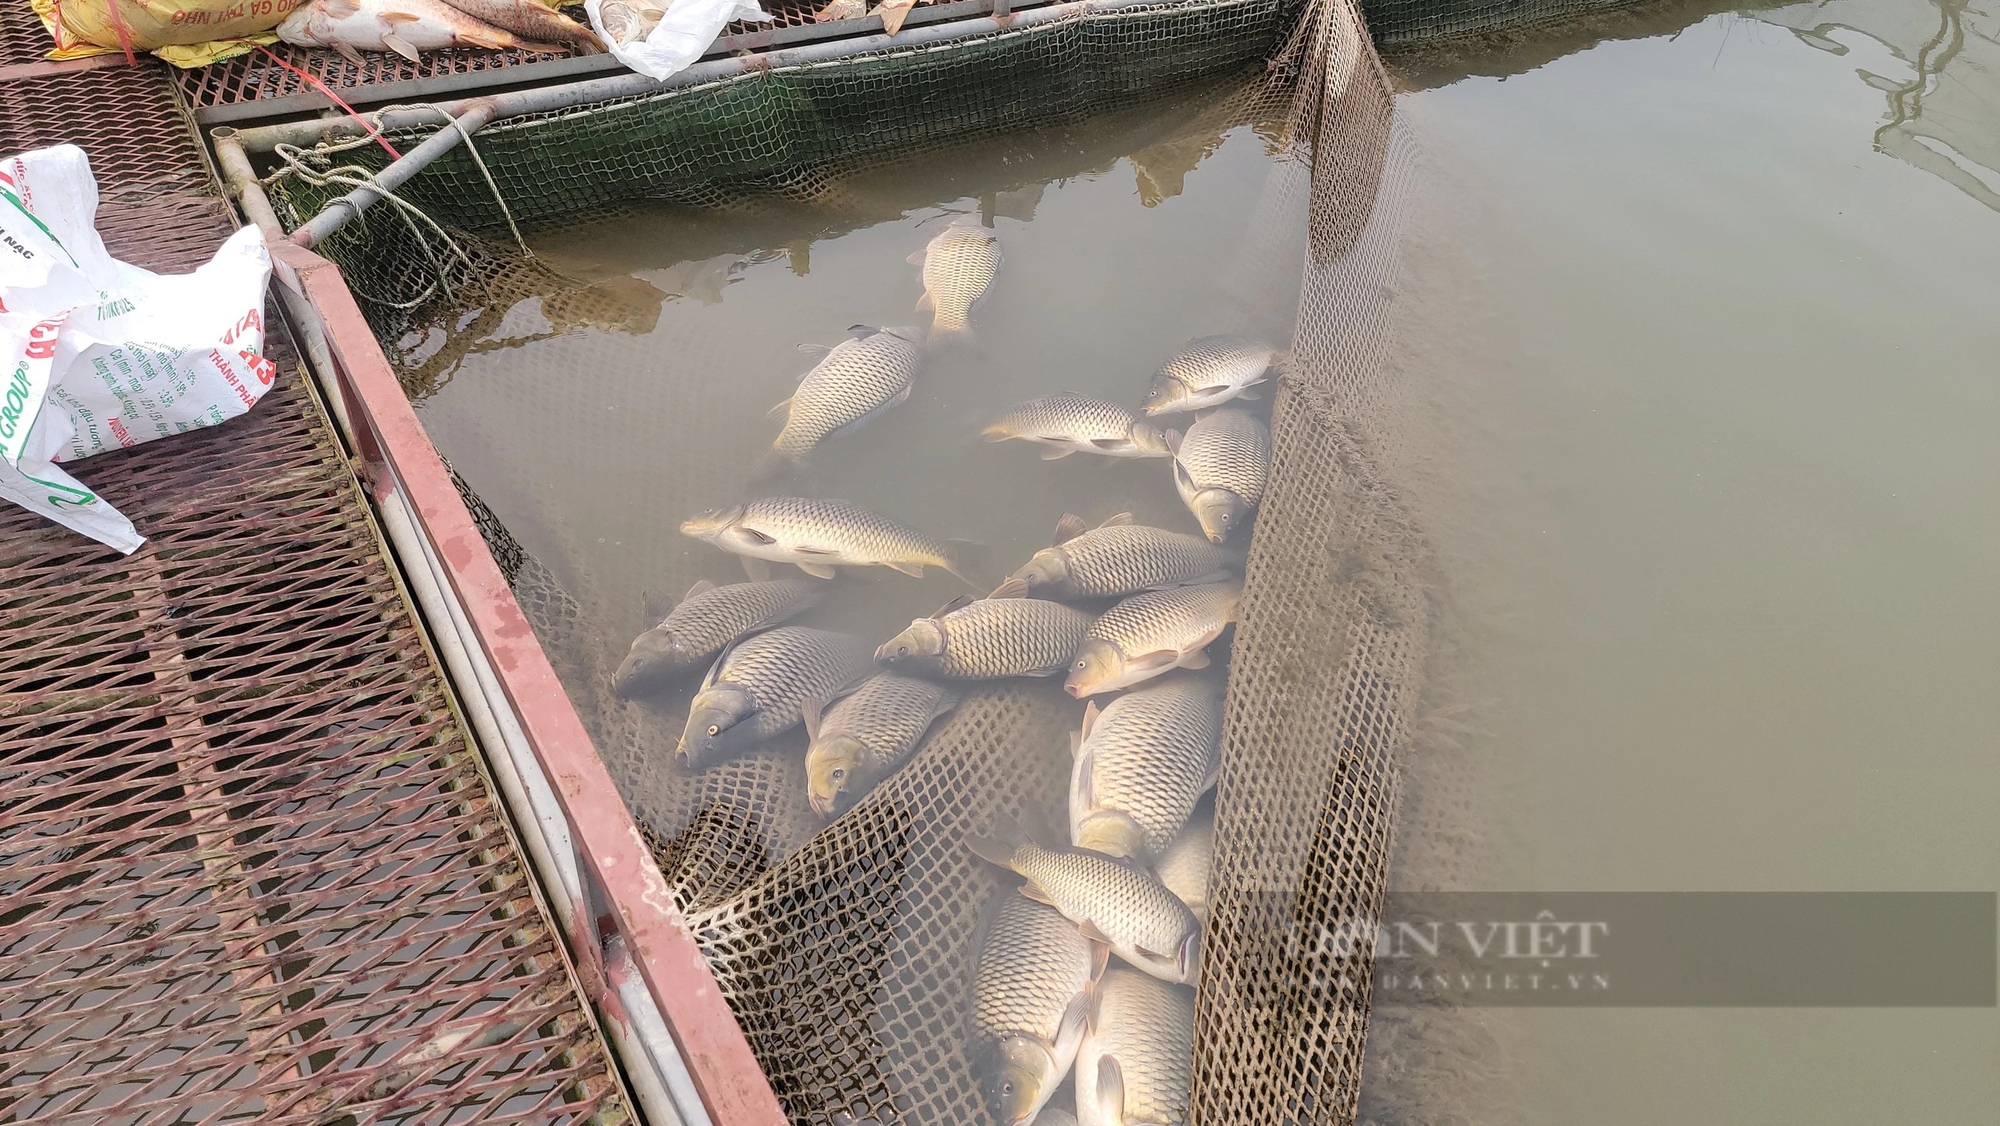 Trăm tấn cá chết bất thường trên sông Thái Bình ở TP Hải Dương, dân buồn hụt hẫng, có nhà "trôi tiền tỷ"- Ảnh 3.